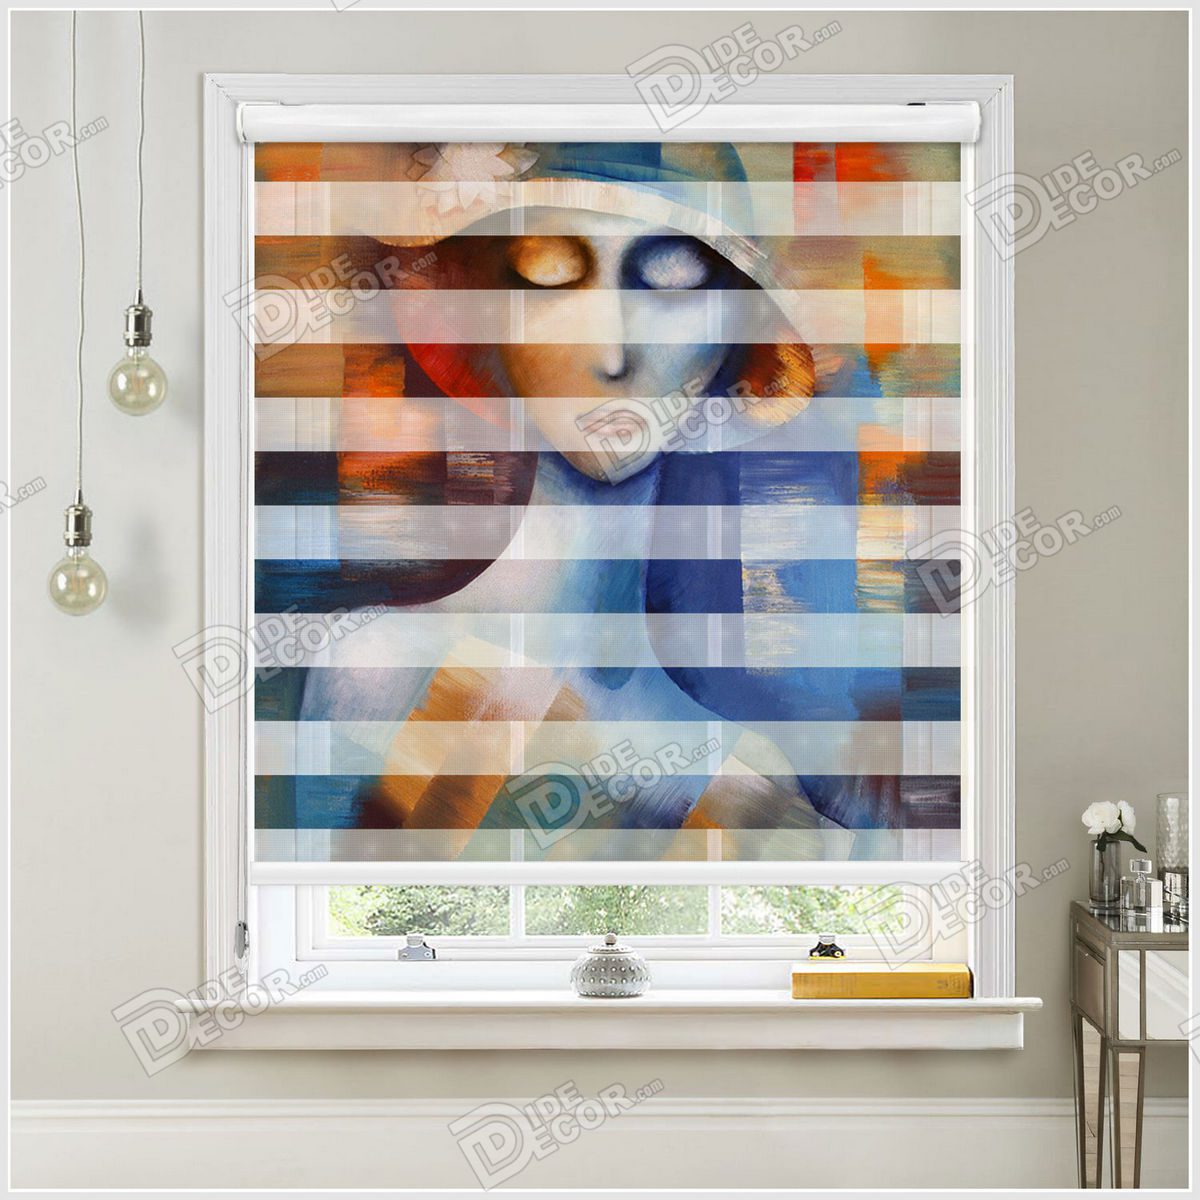 پرده زبرا طرح نقاشی کد ZSP-20 با تصویری از یک زن با چشمان بسته و طرح نقاشی مدرنیته به رنگ آبی و نارنجی